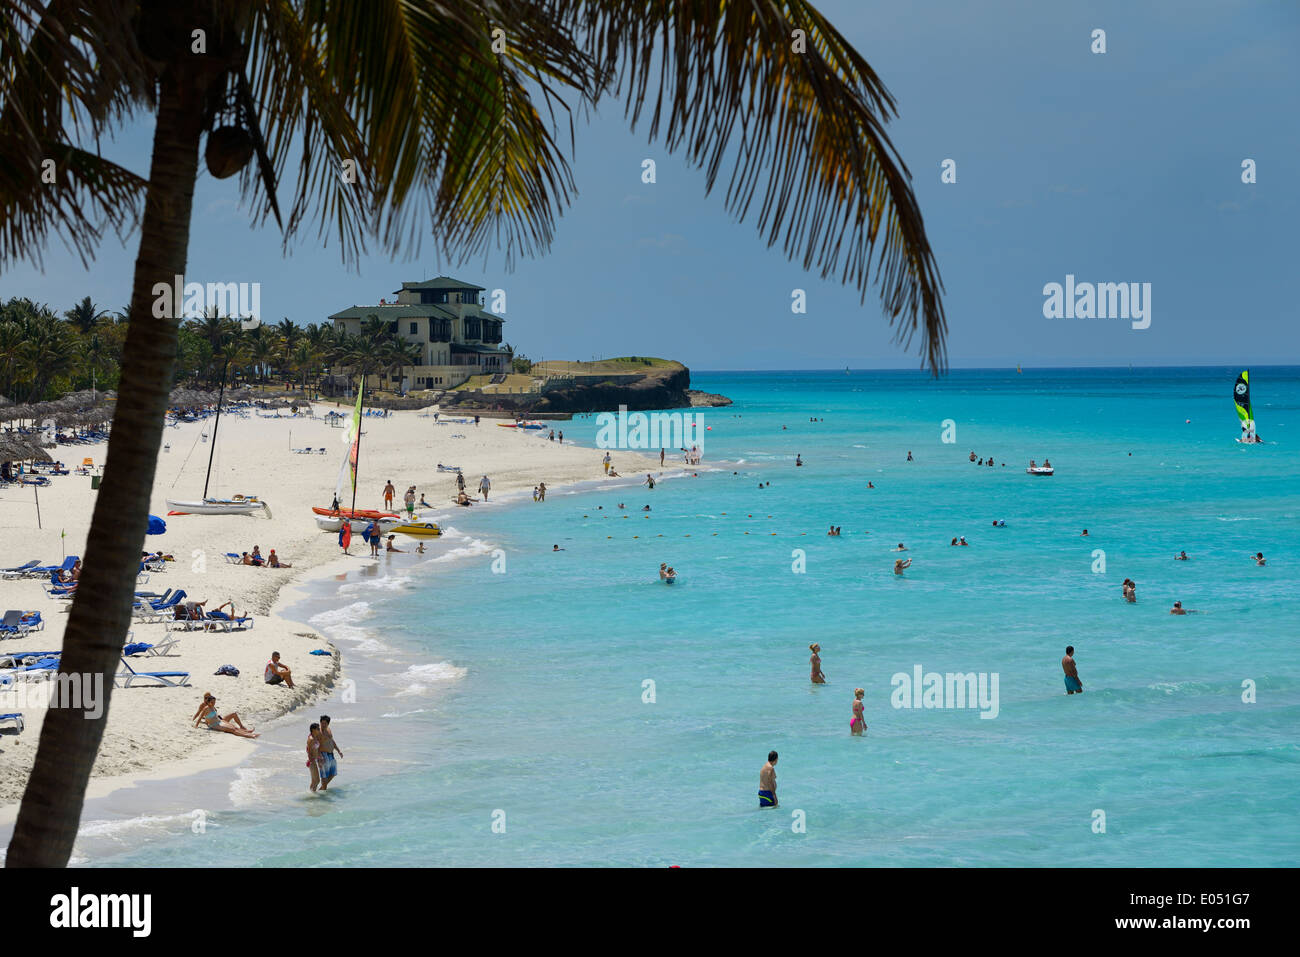 Coconut Palm tree e Xanadu mansion alla spiaggia di sabbia bianca di Varadero resort Cuba con i turisti in acque turchesi dell'Oceano Atlantico Foto Stock